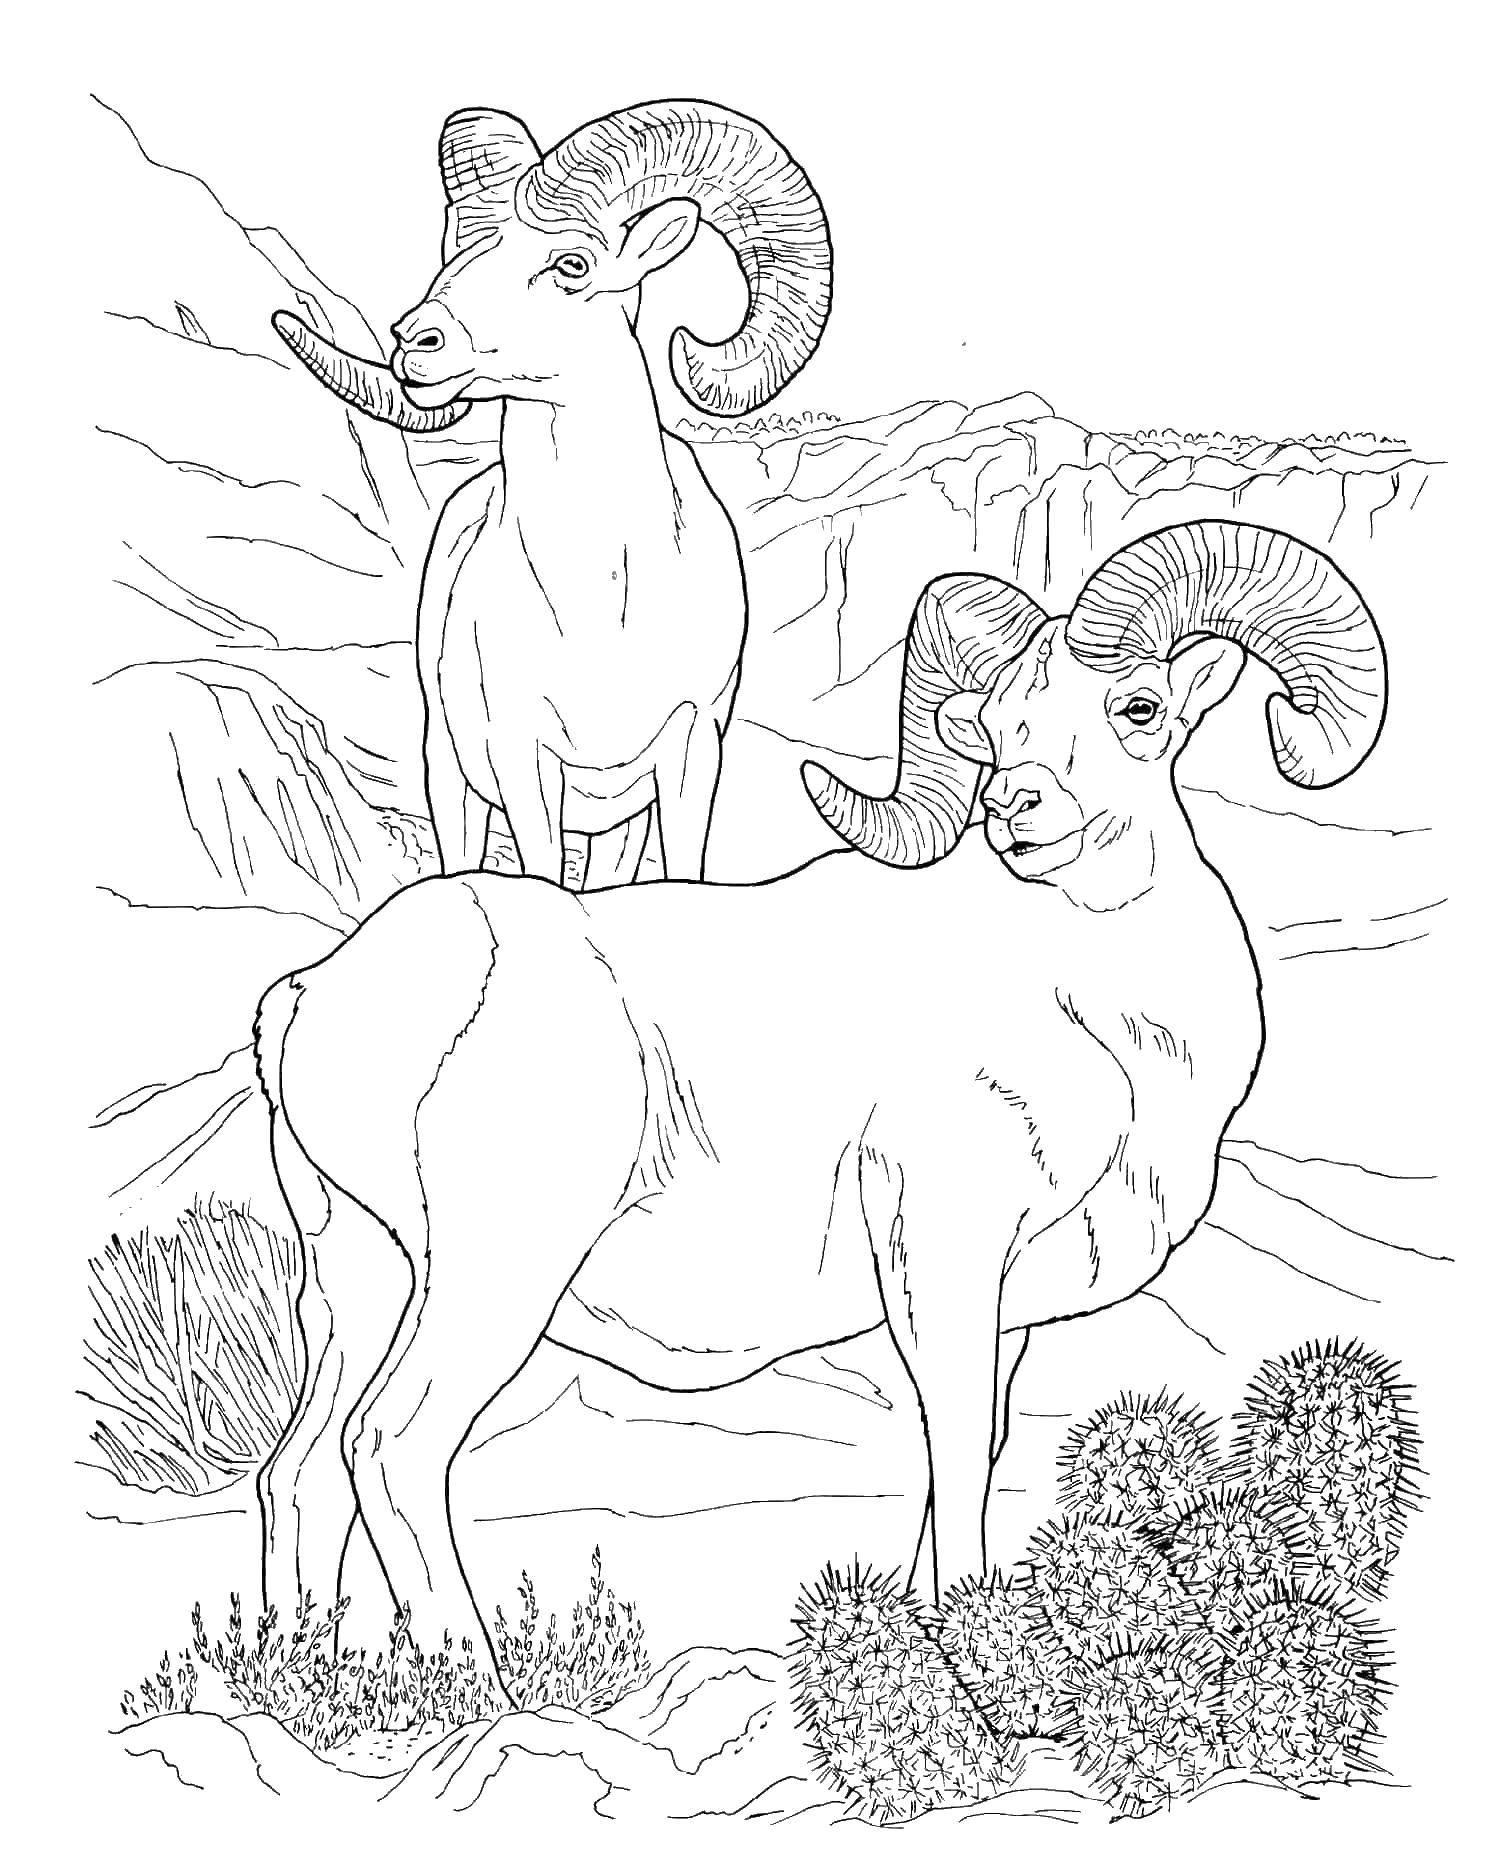 Раскраска барана и овцы для детей (баран)